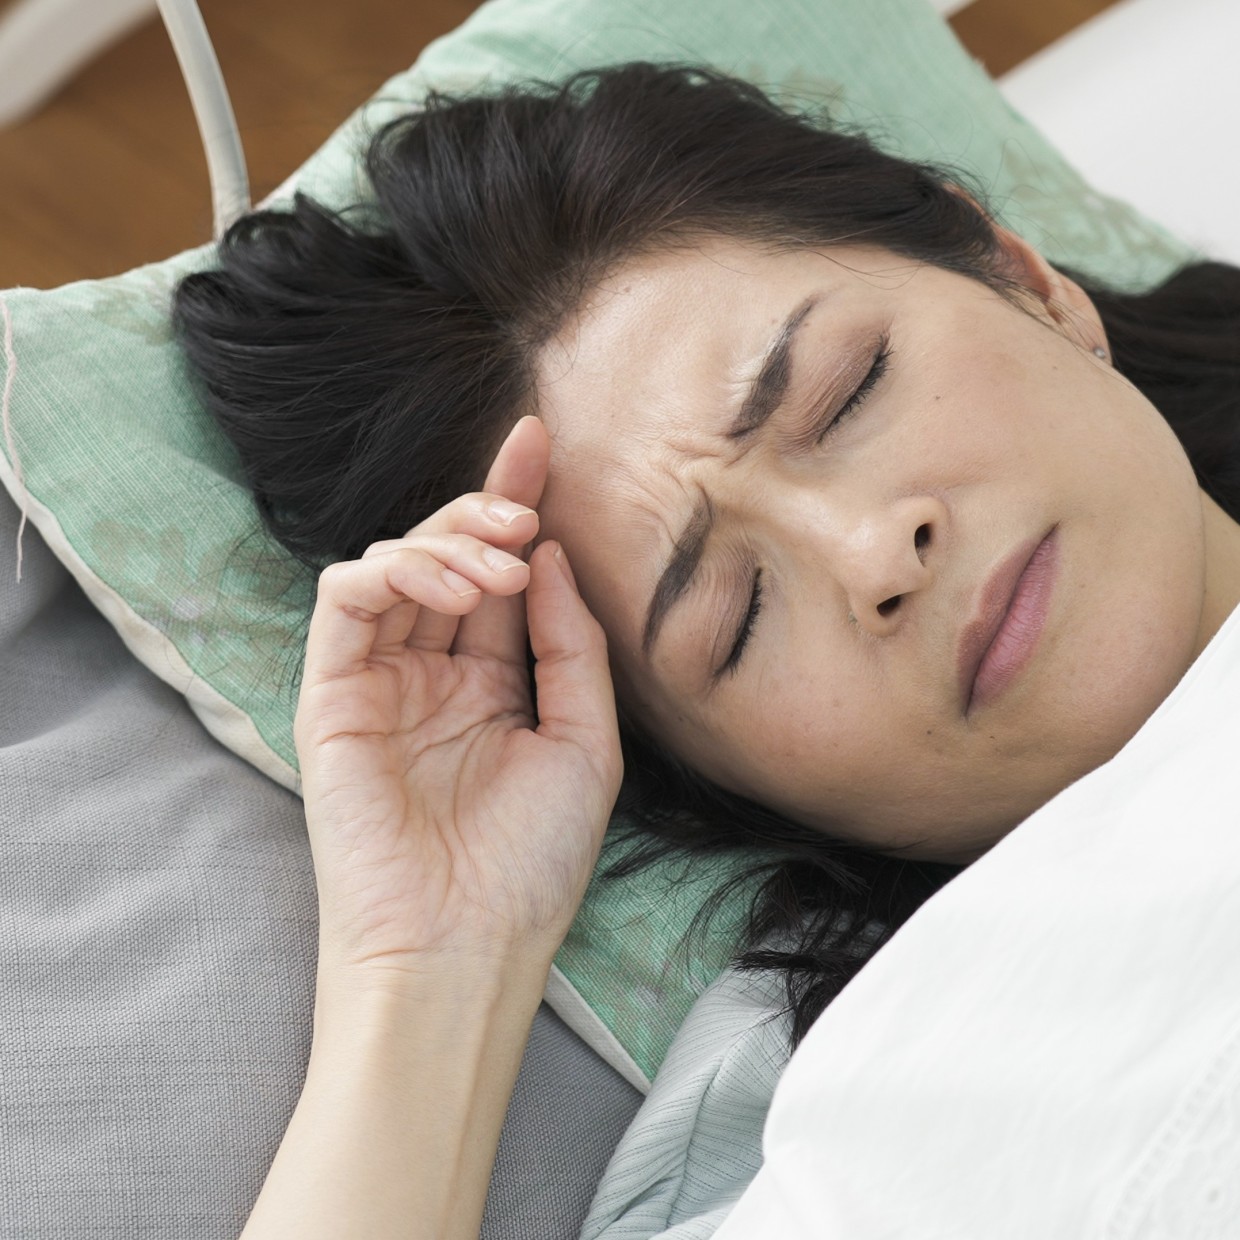  「自宅にいれば安全」は間違い！睡眠中に注意すべき熱中症対策とは＃医師解説 